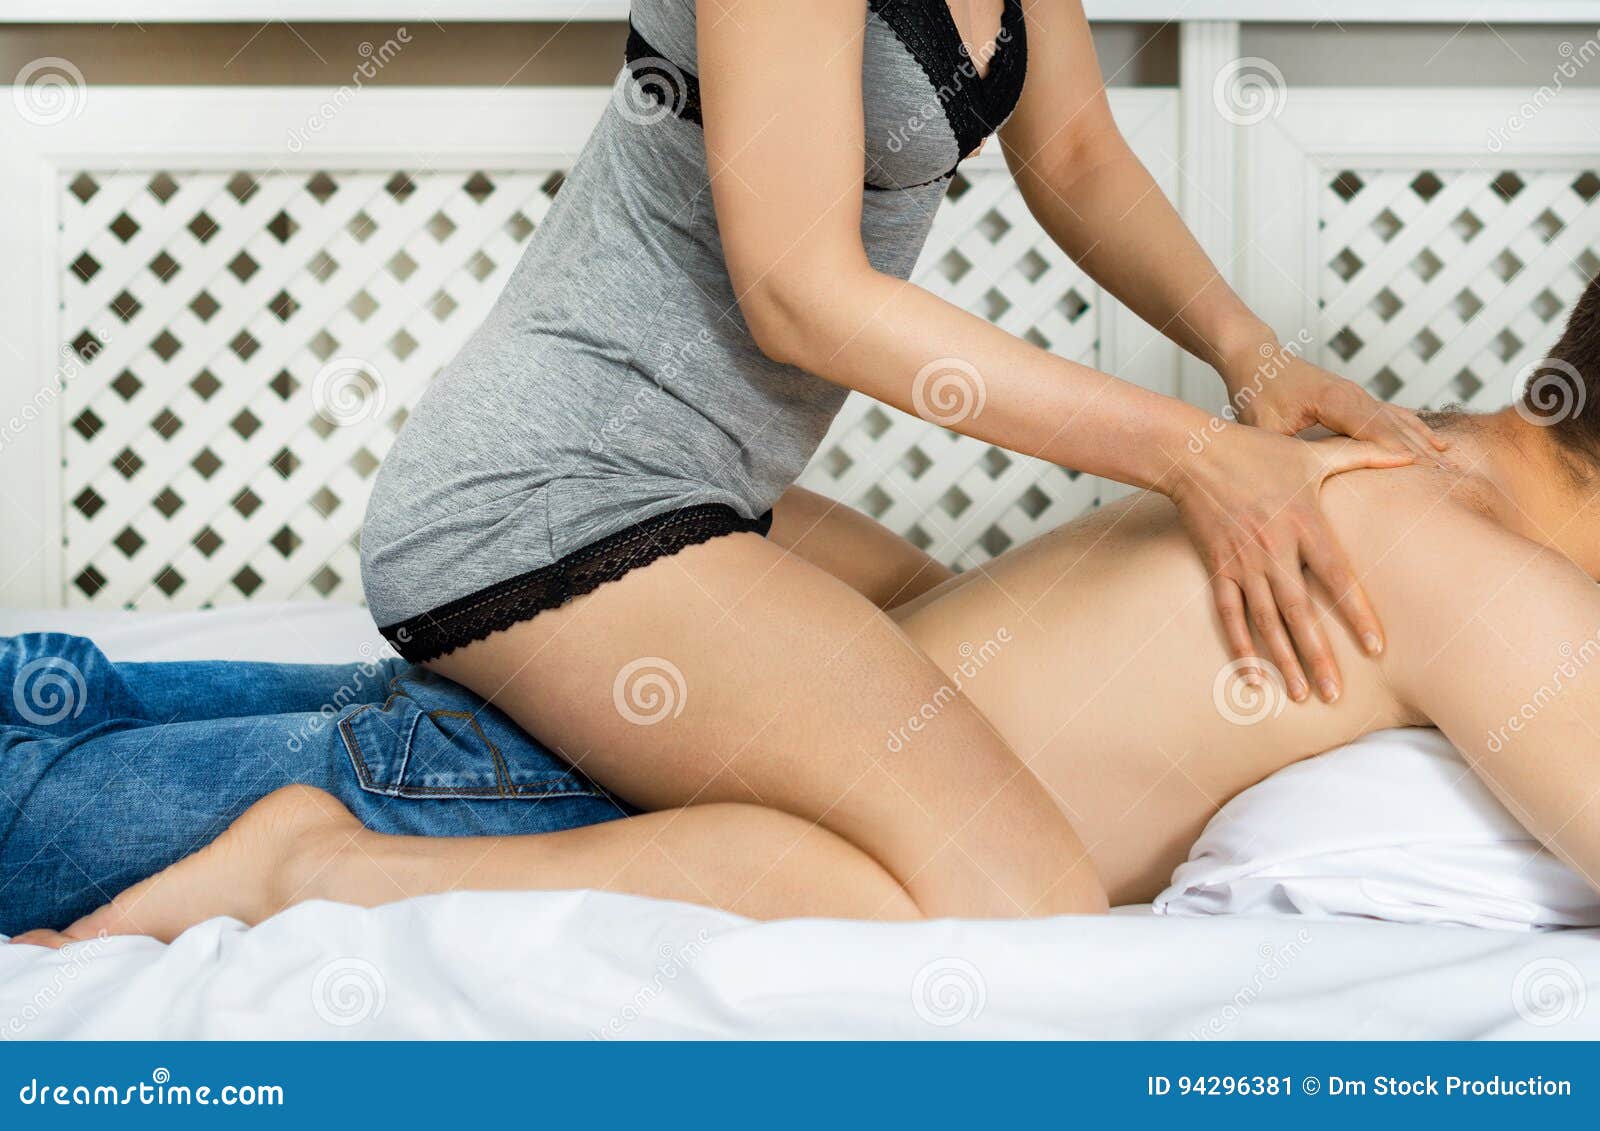 B2b massagen